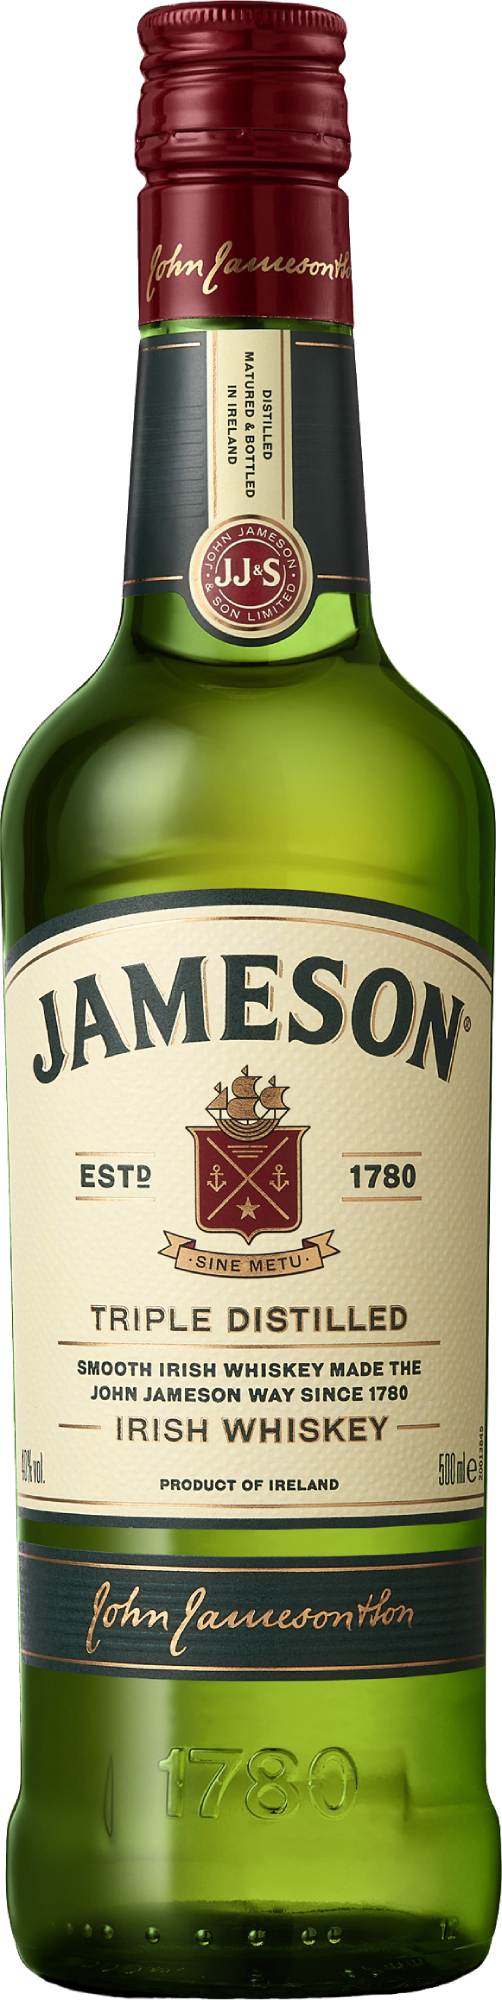 Віскі Jameson склад магазин winewine